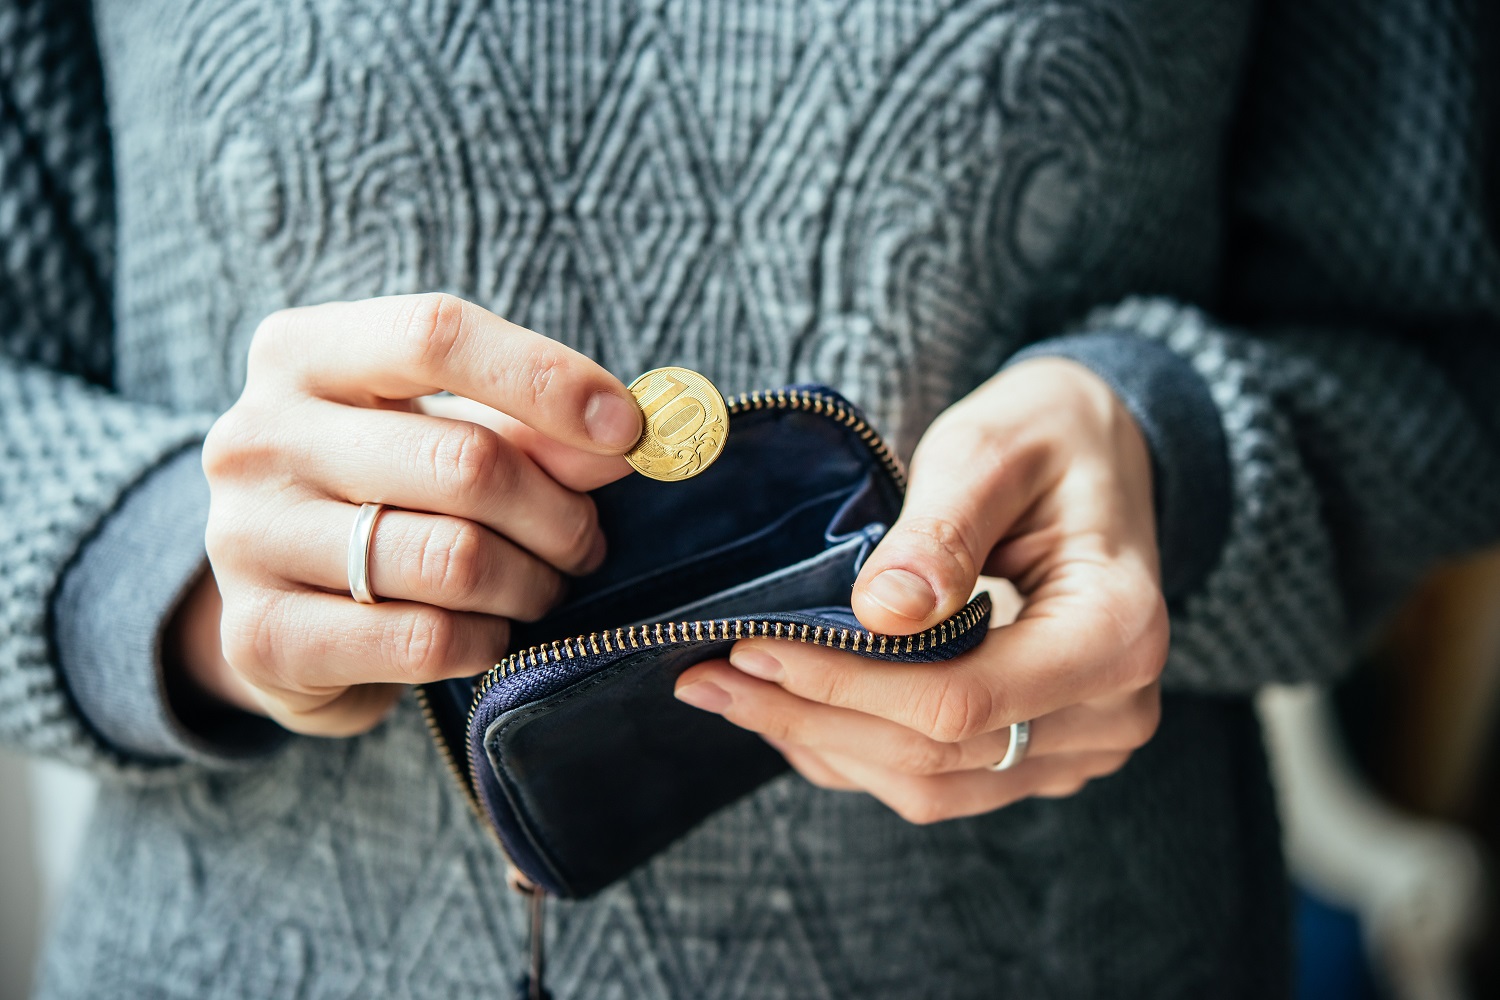 Một người mặc áo len màu xám lấy đồng xu Nga từ chiếc ví da màu đen.